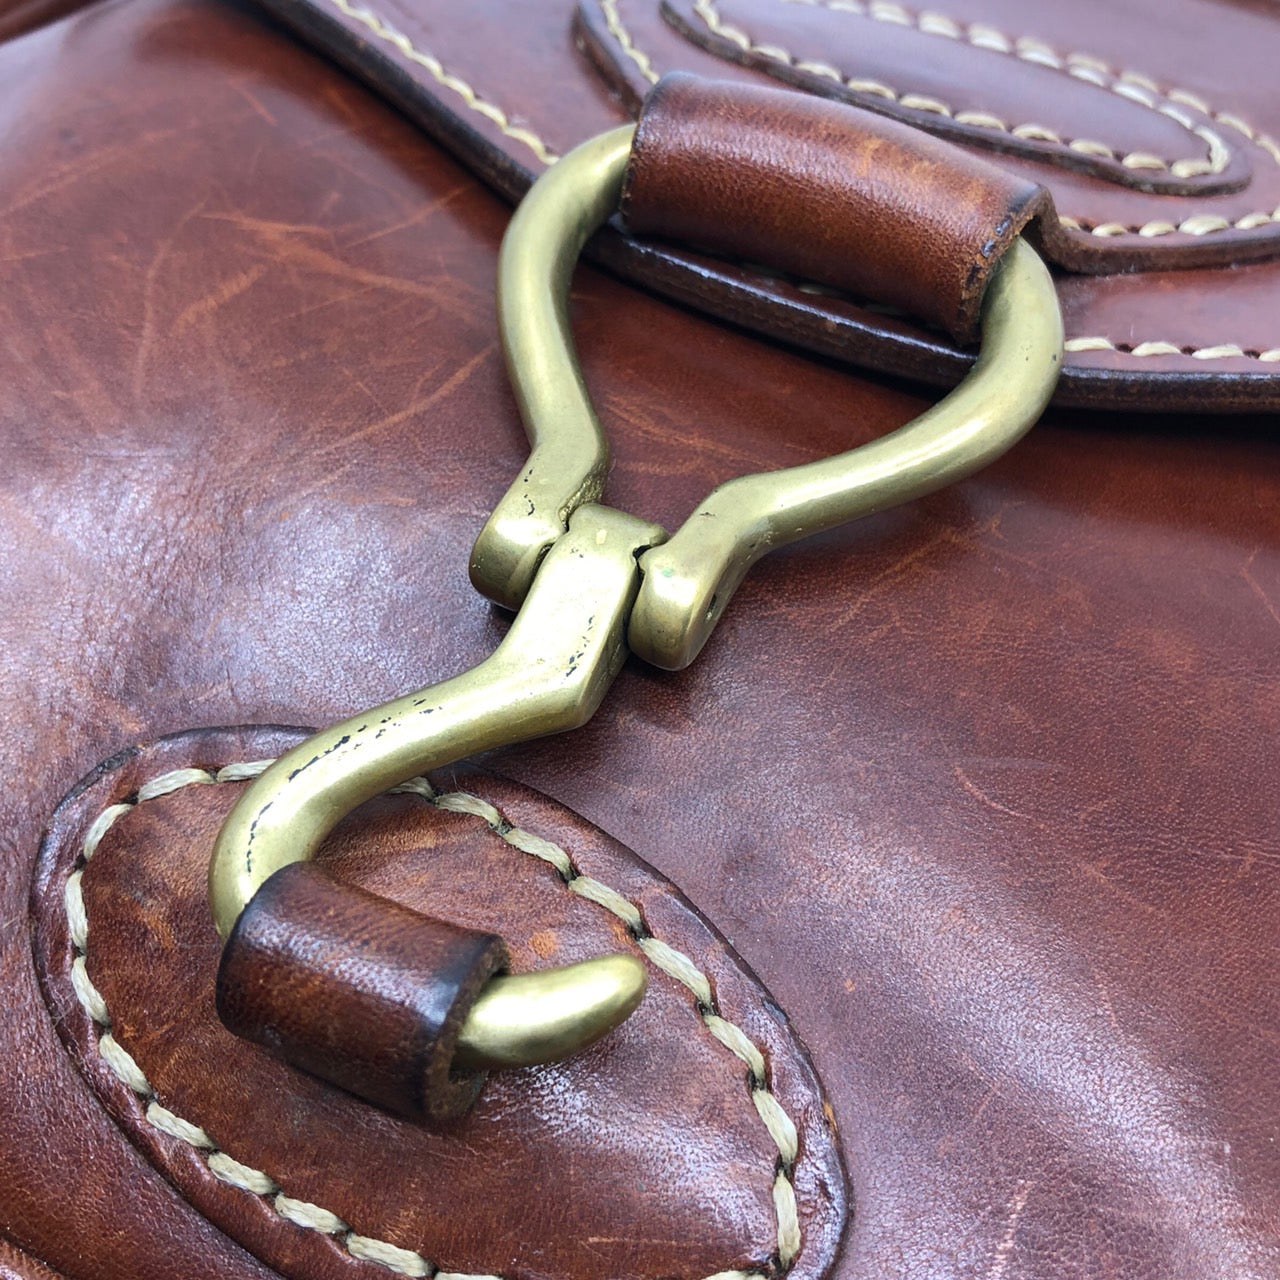 ISAIAH KINCAID(イザヤキンケイド) ヴィンテージ真鍮バックルレザーショルダーバッグ ブラウン イタリア製　厚革